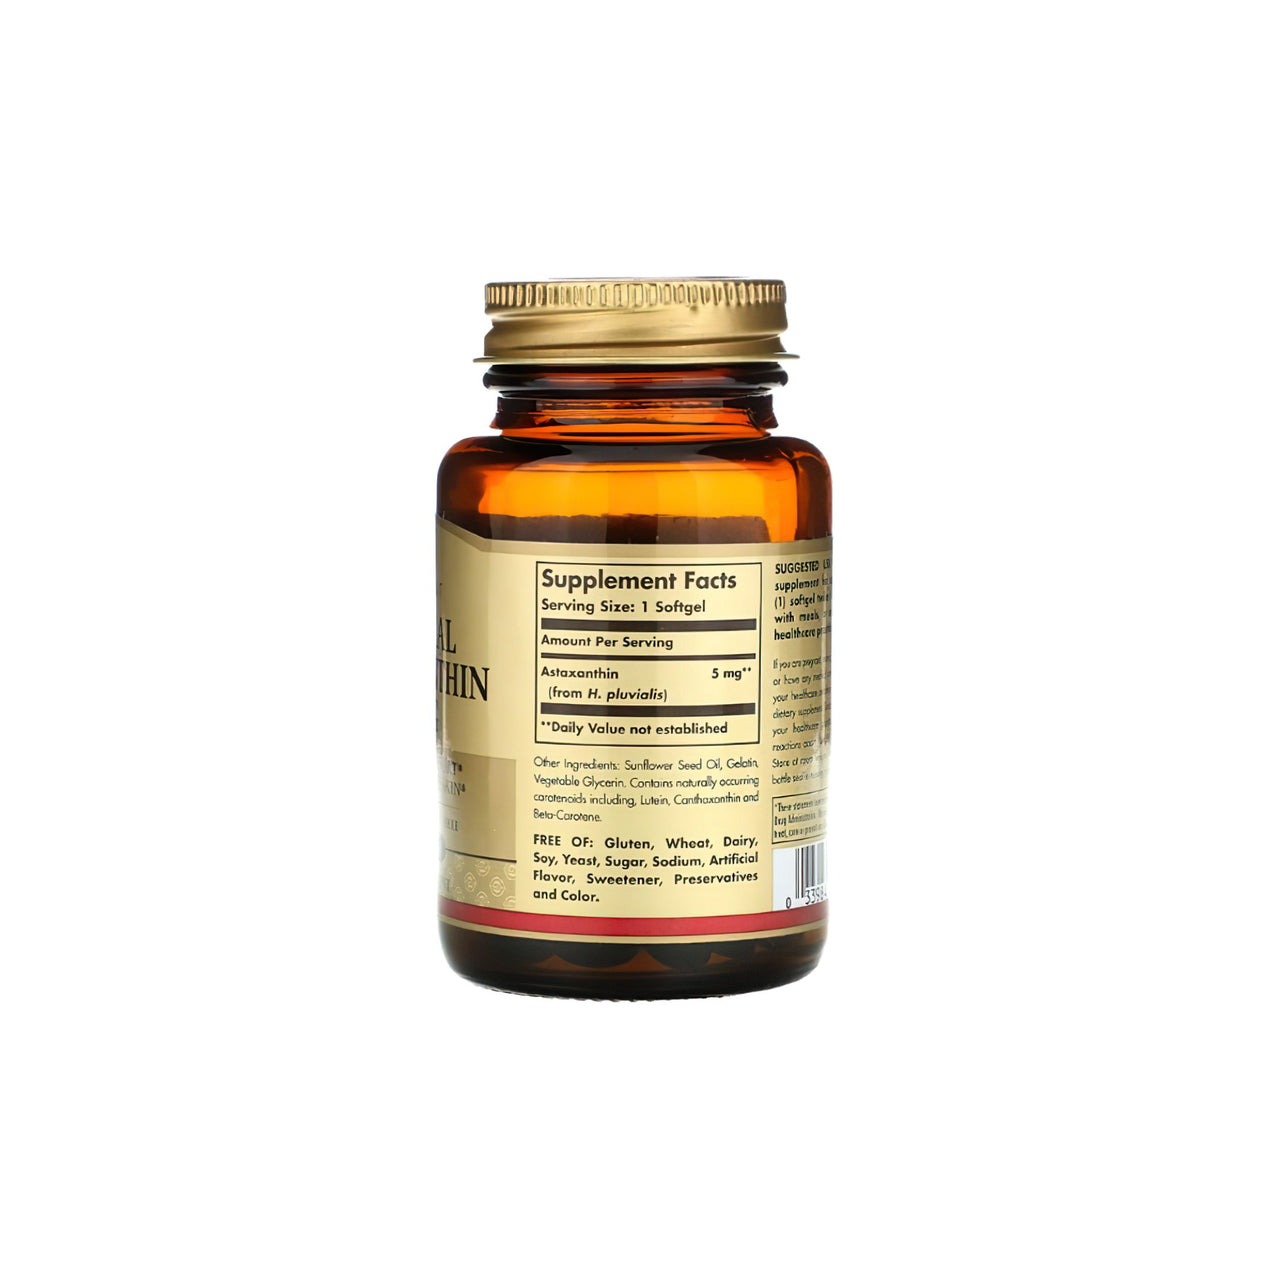 Um frasco de vitamina C rica em antioxidantes, reforçada com o poderoso ingrediente de cuidados da pele Solgar Natural Astaxanthi 5 mg 30 softgel, apresentado num fundo branco nítido.